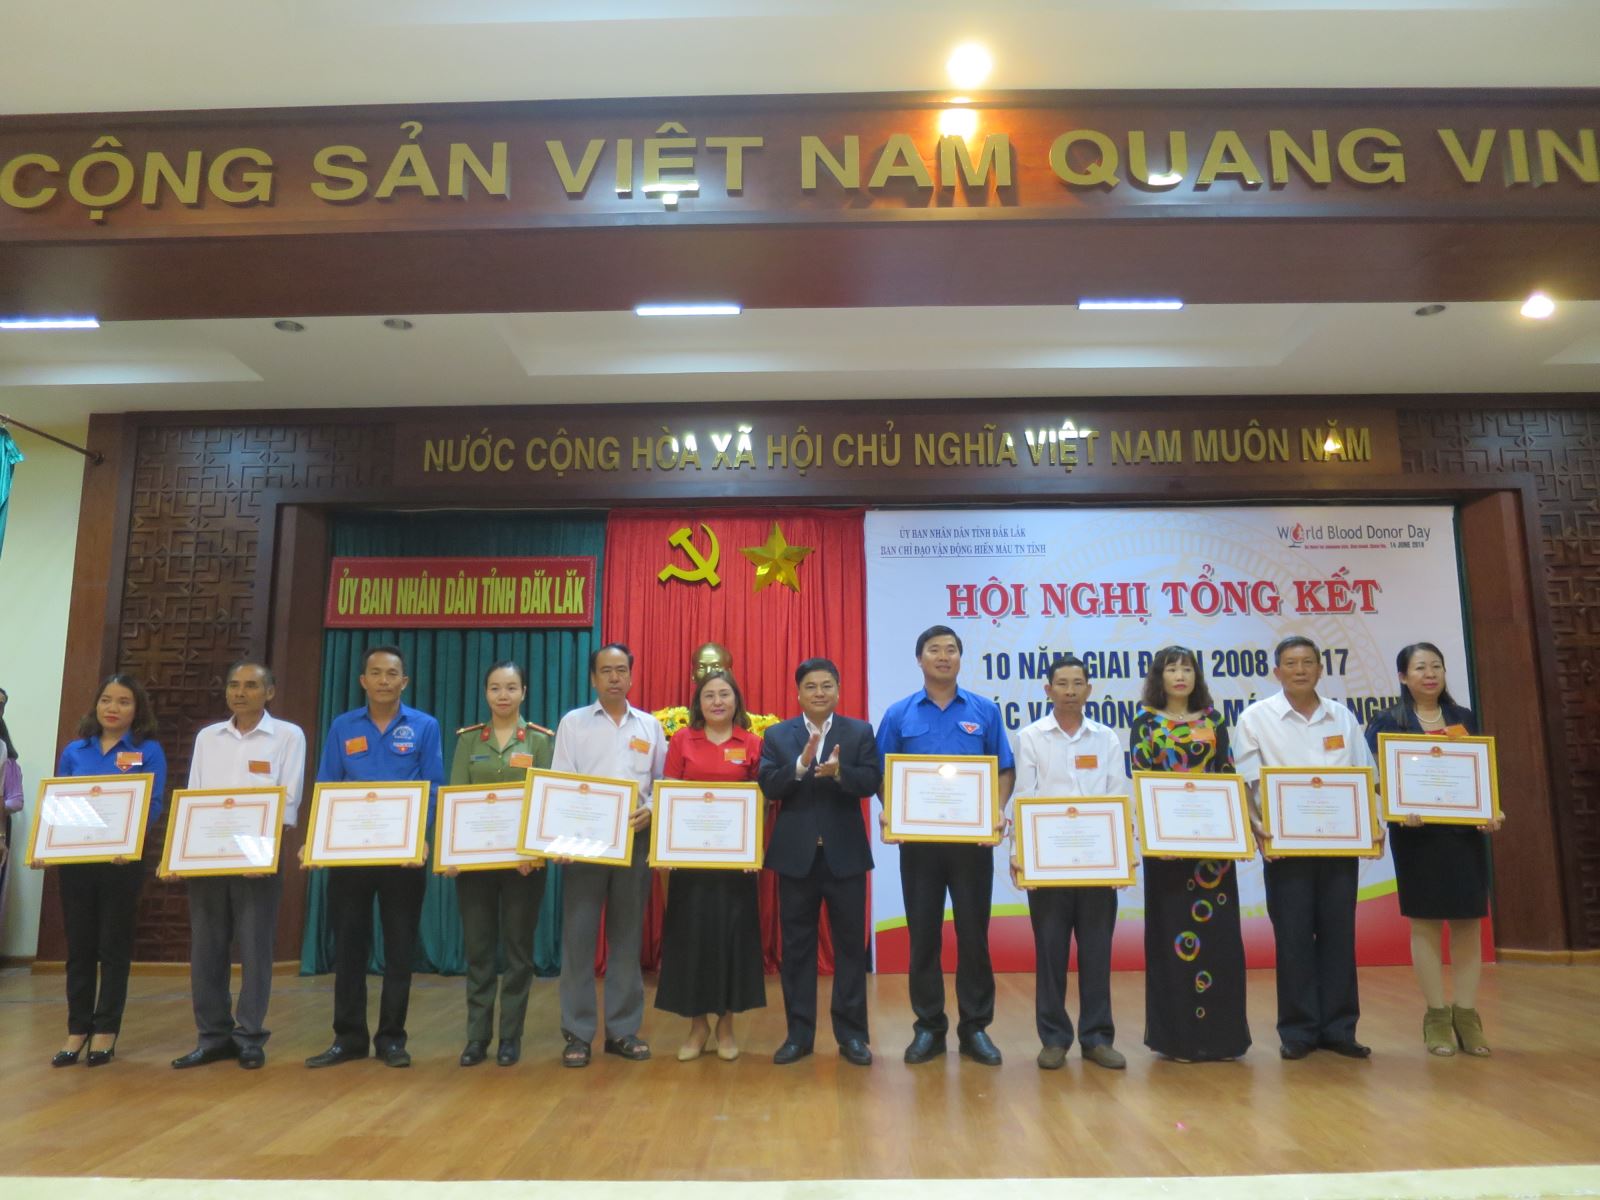 Tặng bằng khen TW Hội Chữ thập đỏ Việt Nam cho 11 tập thể